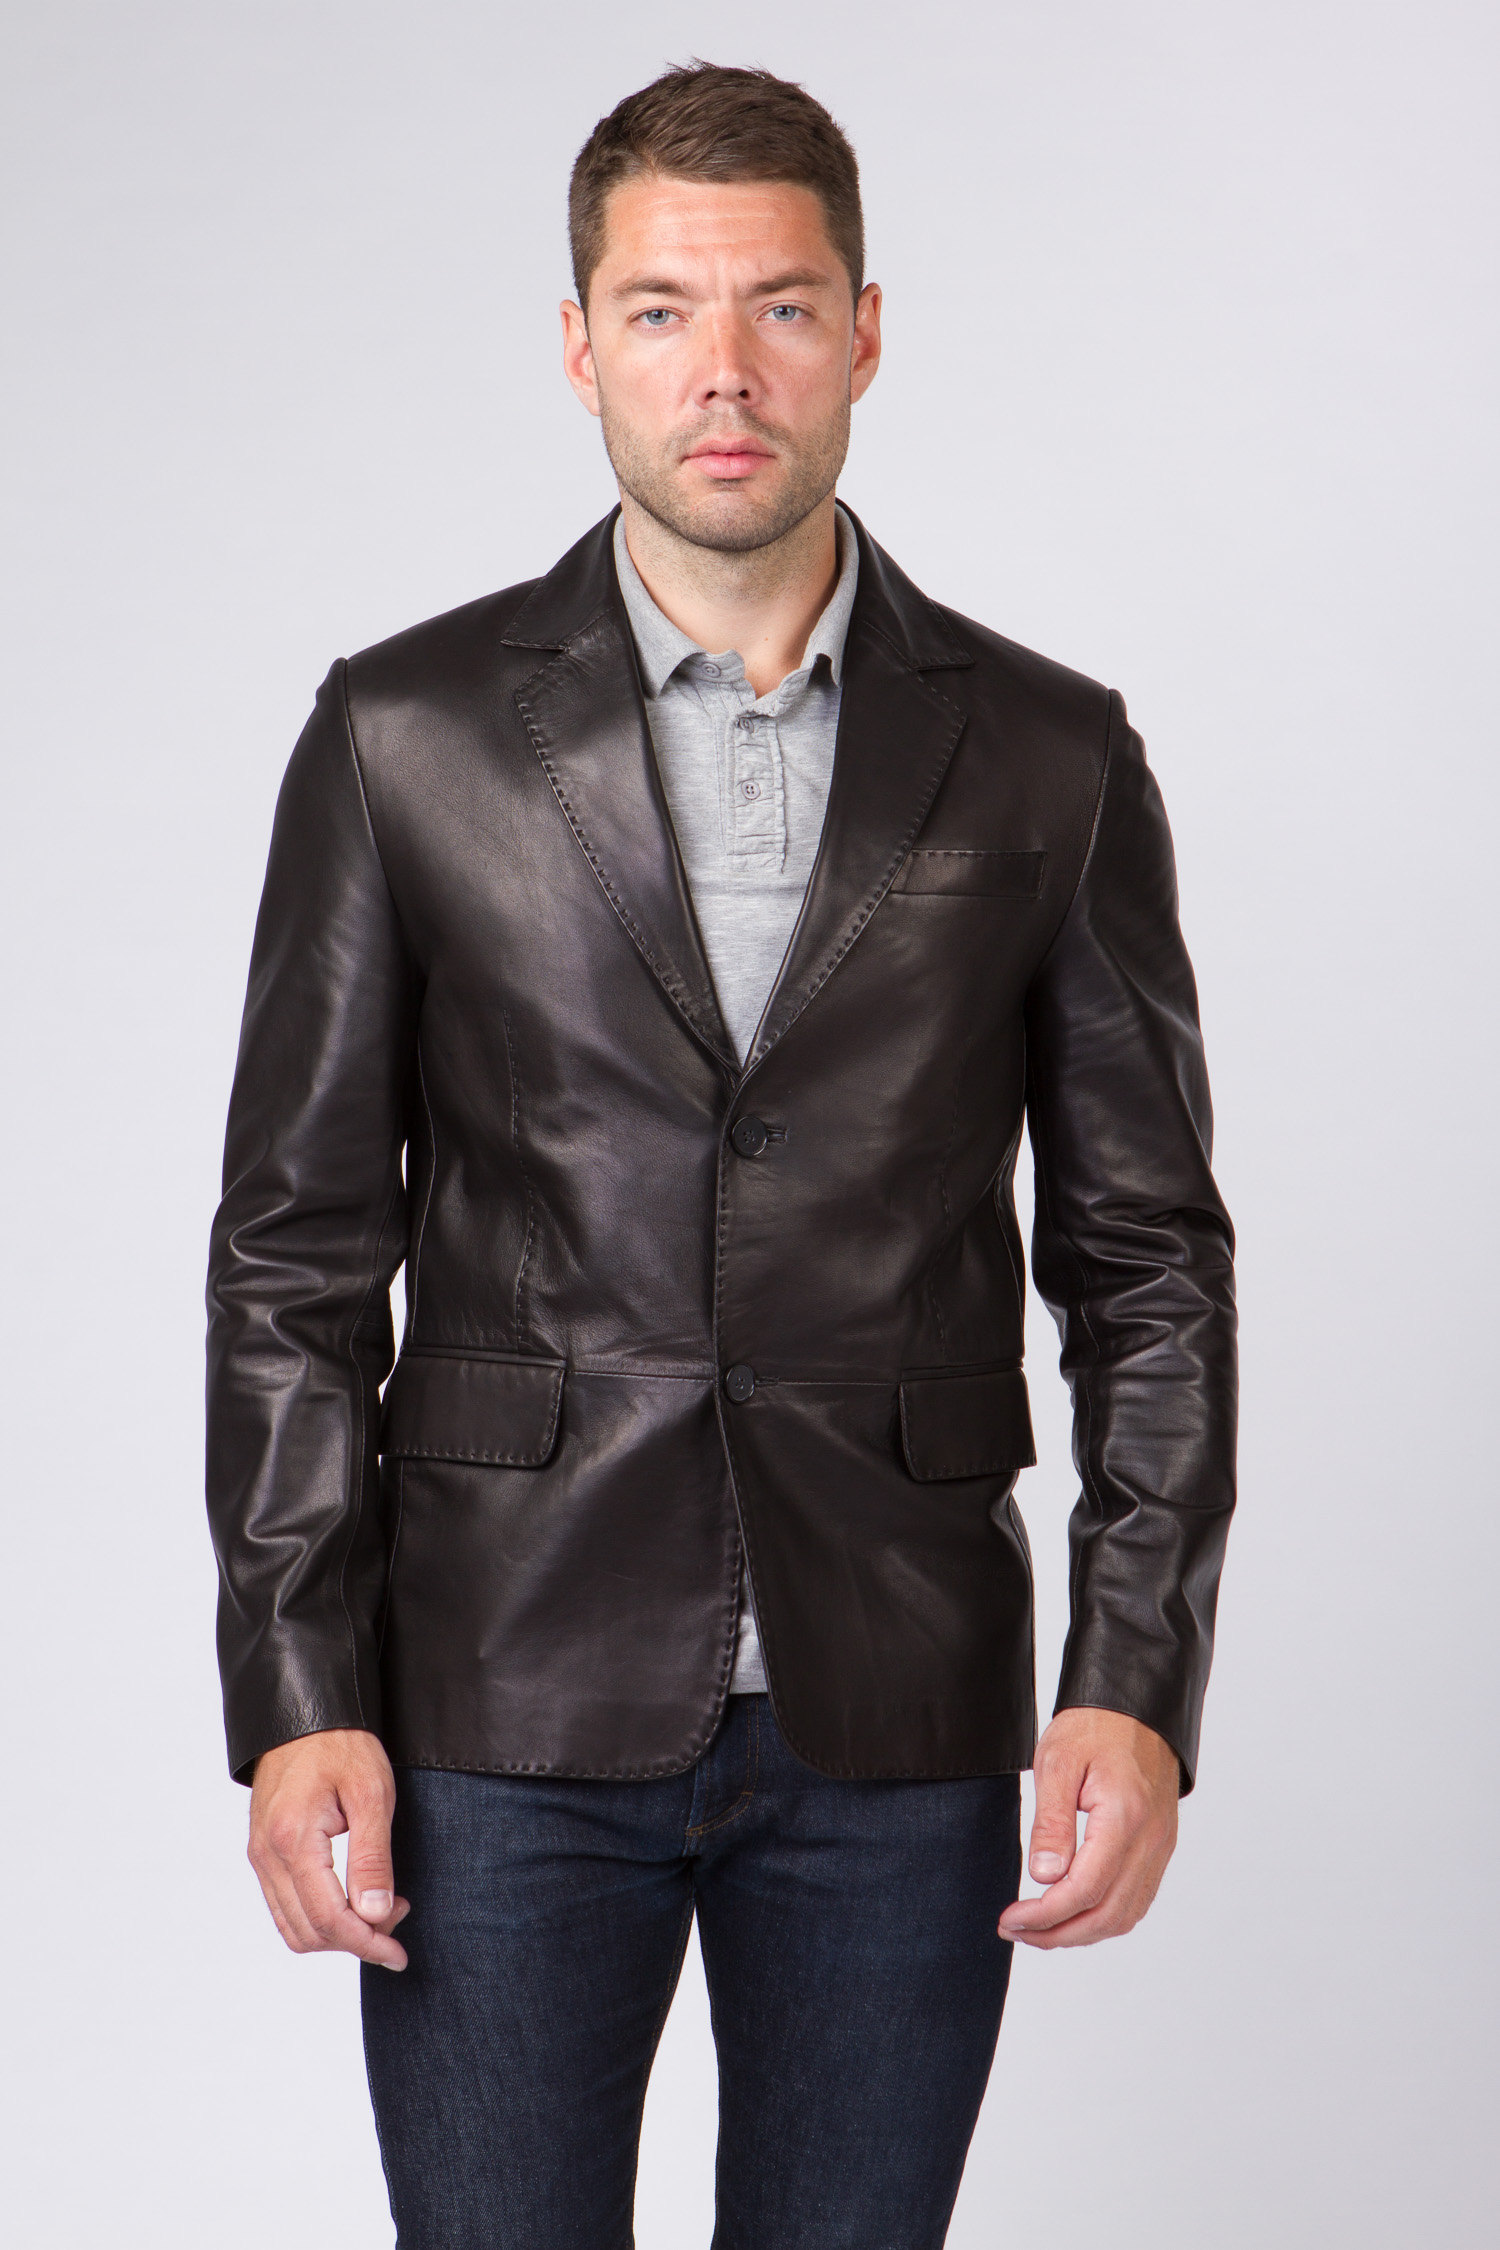 Мужской пиджак натуральная кожа. Пиджак Romanoff мужской кожаный. Кожаный пиджак мужской. Кожаная куртка пиджак мужская. Мужской пиджак из натуральной кожи.